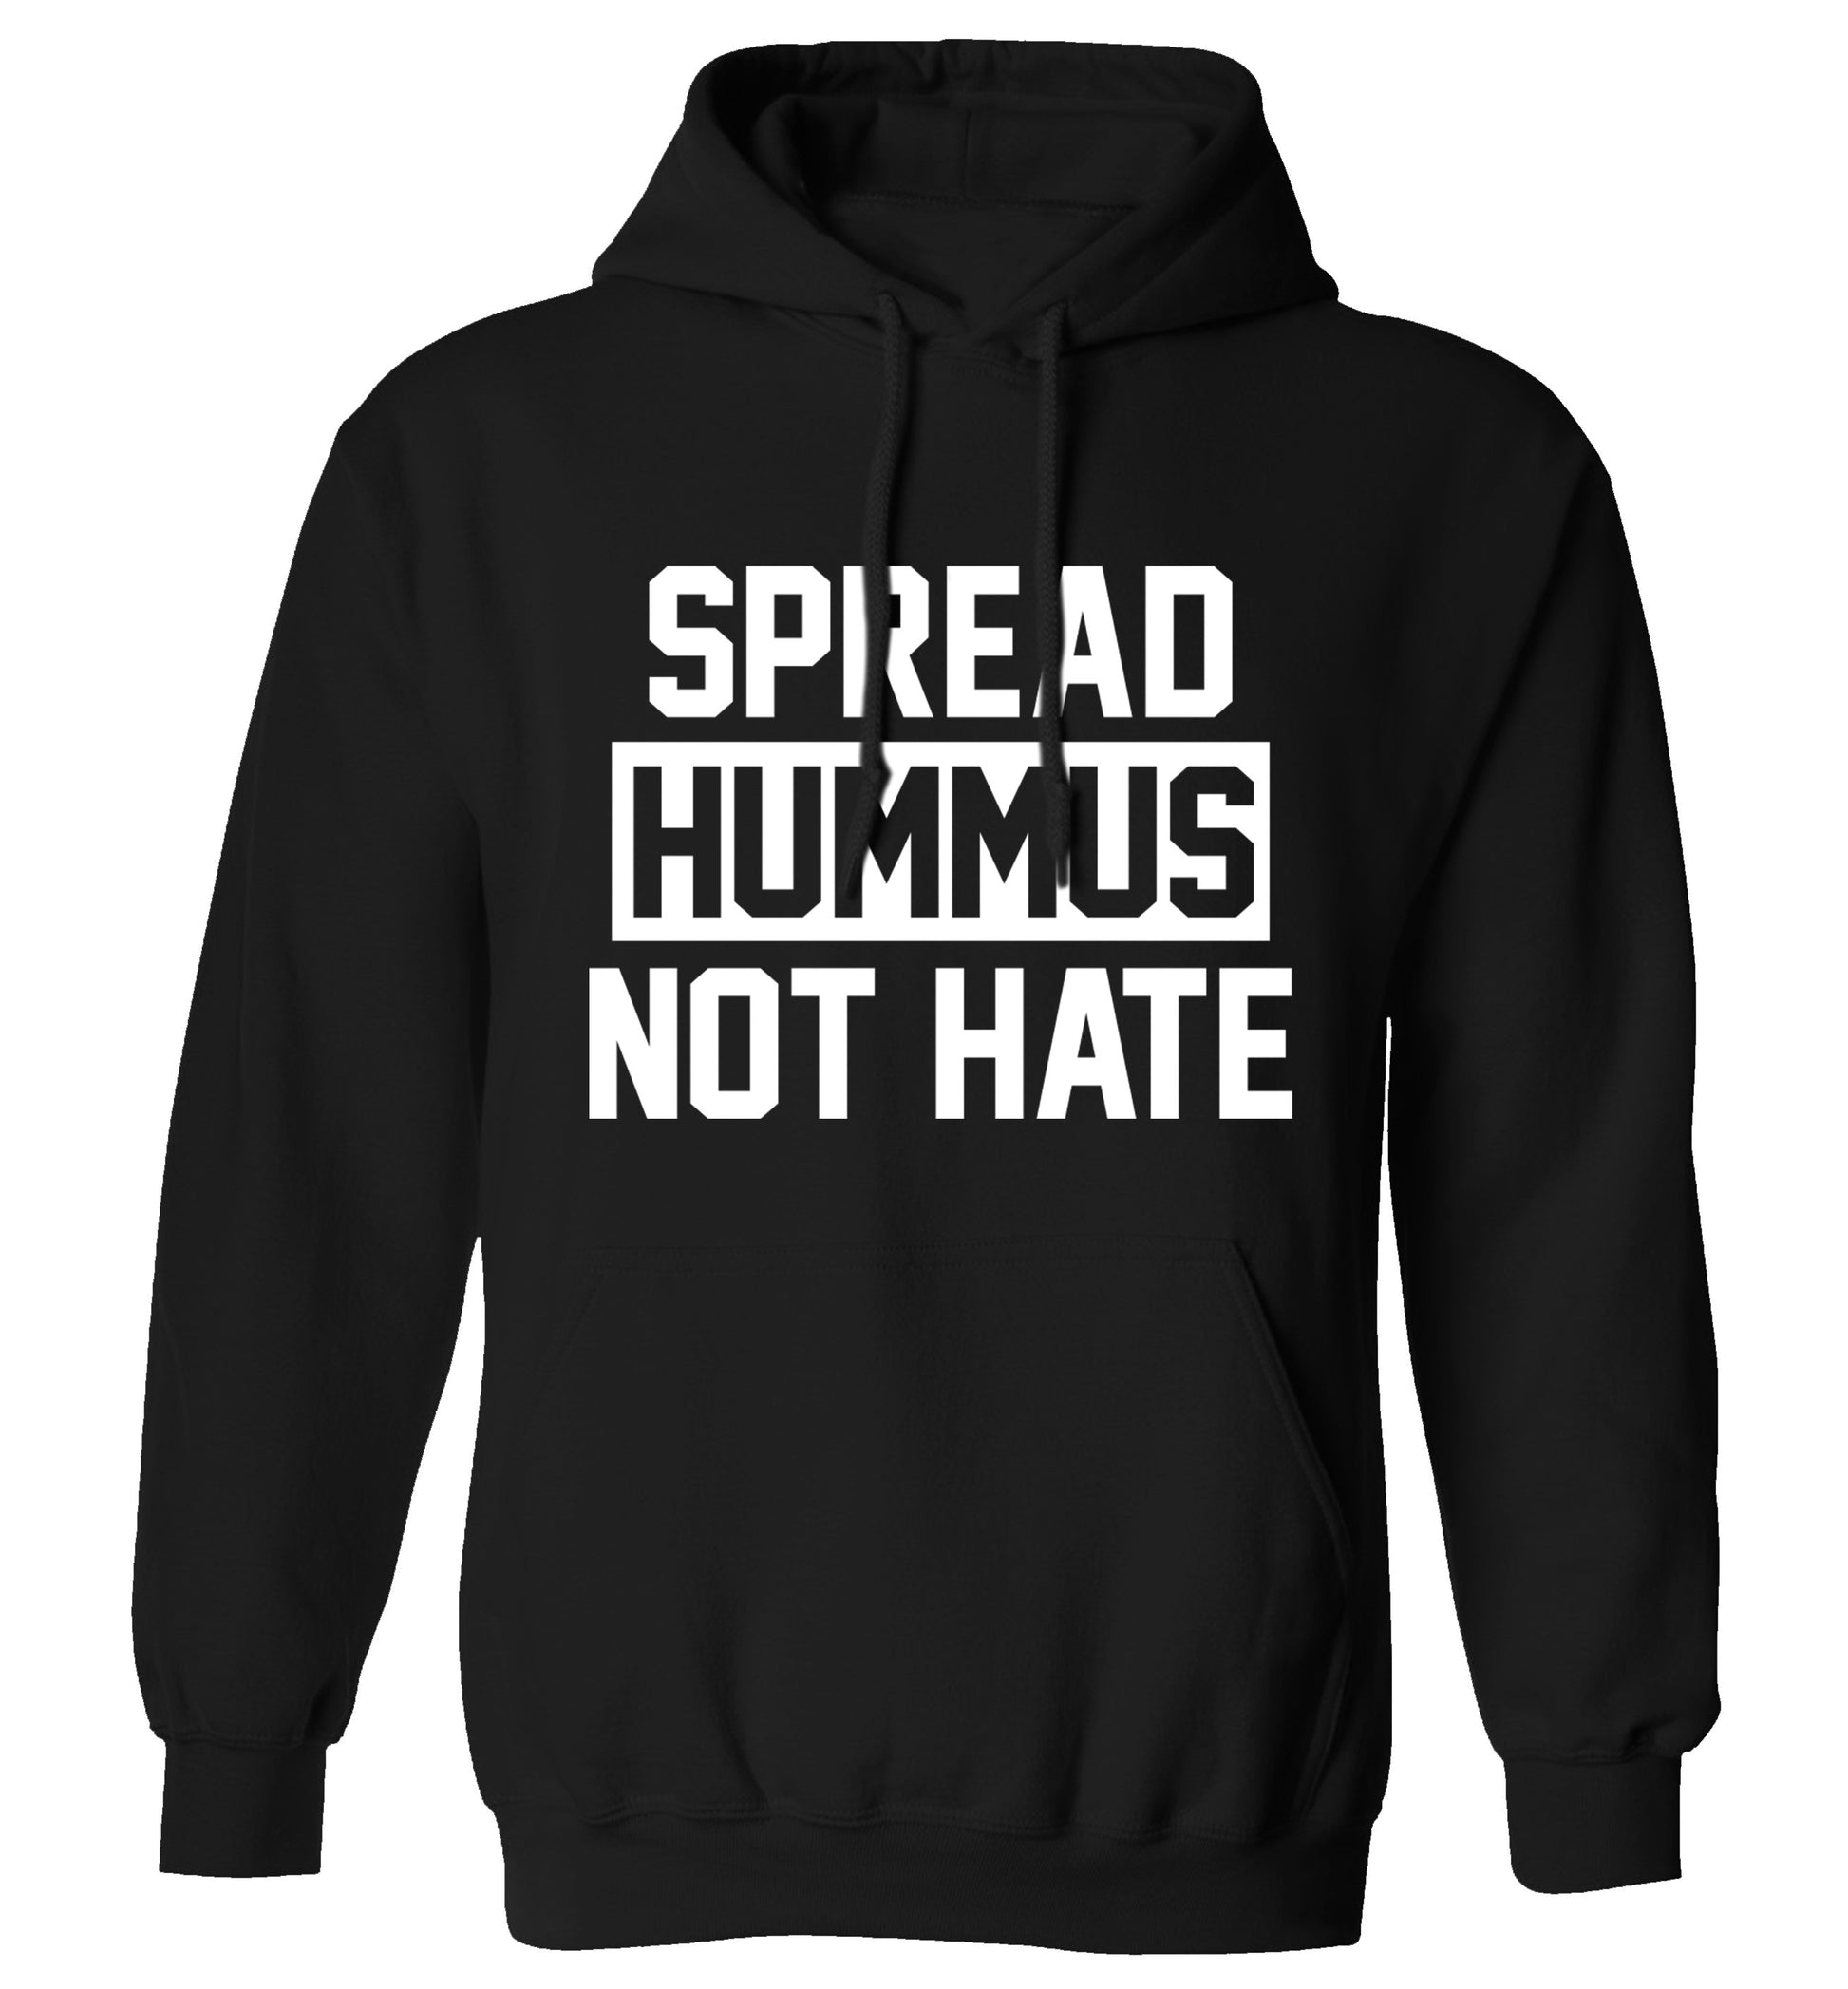 Spread hummus not hate adults unisex black hoodie 2XL